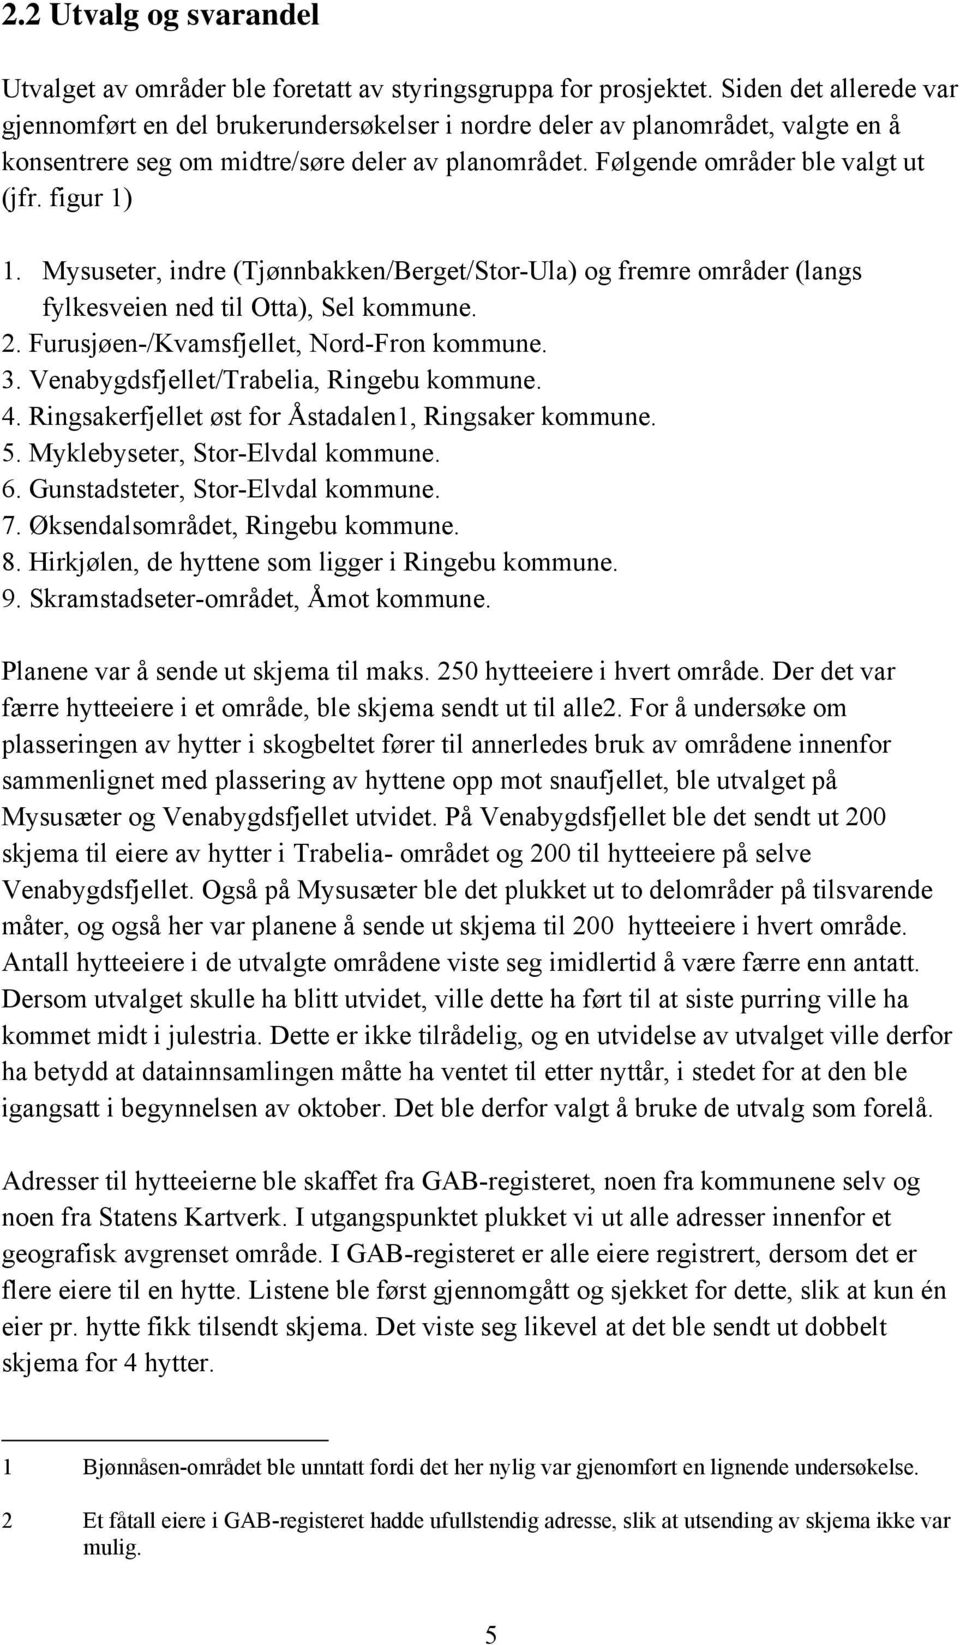 figur 1) 1. Mysuseter, indre (Tjønnbakken/Berget/Stor-Ula) og fremre områder (langs fylkesveien ned til Otta), Sel kommune. 2. Furusjøen-/Kvamsfjellet, Nord-Fron kommune. 3.